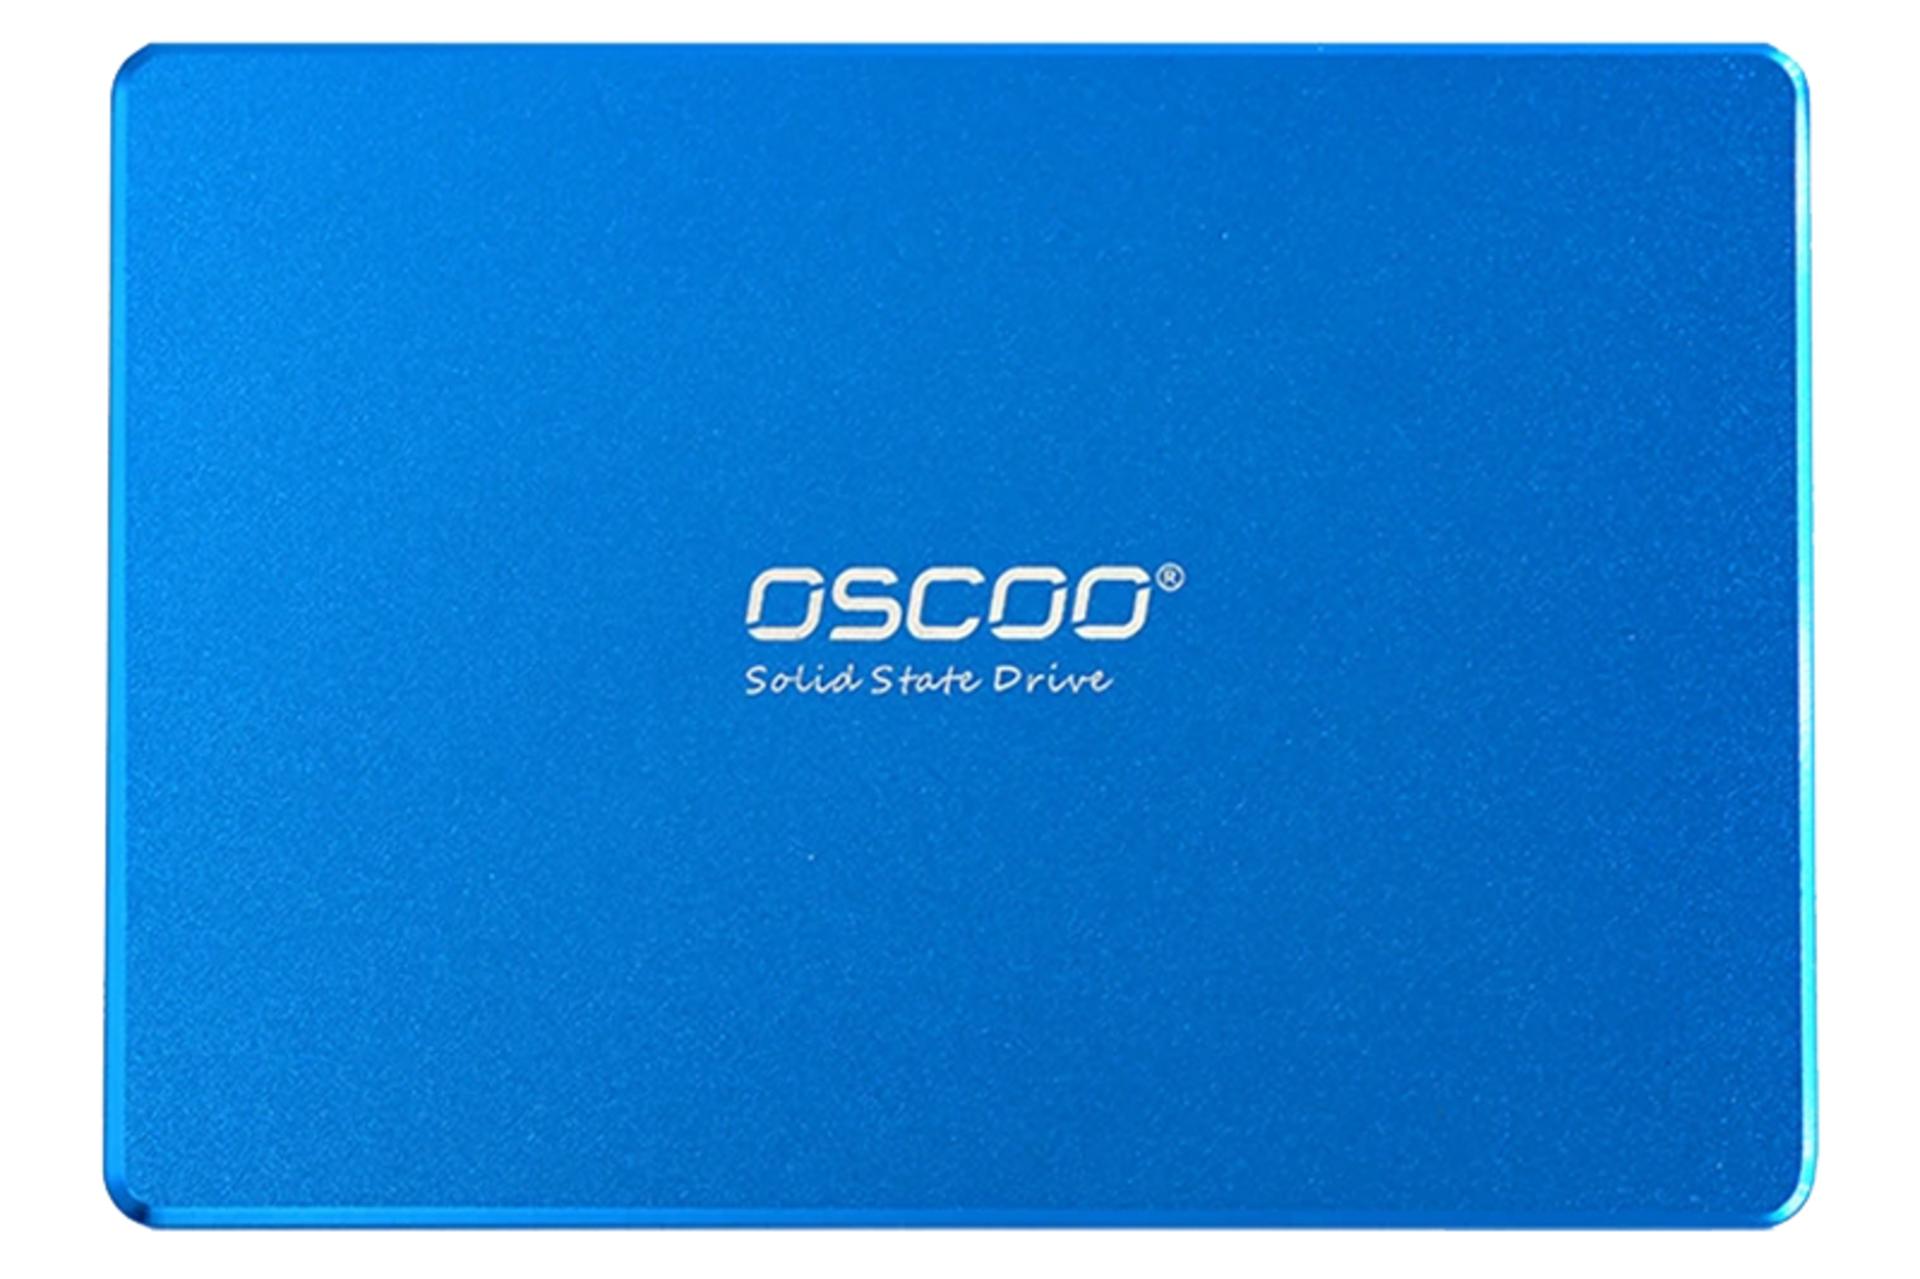 ابعاد و اندازه اس اس دی اسکو BLUE OSC-SSD-001 SATA 2.5 Inch ظرفیت 1 ترابایت